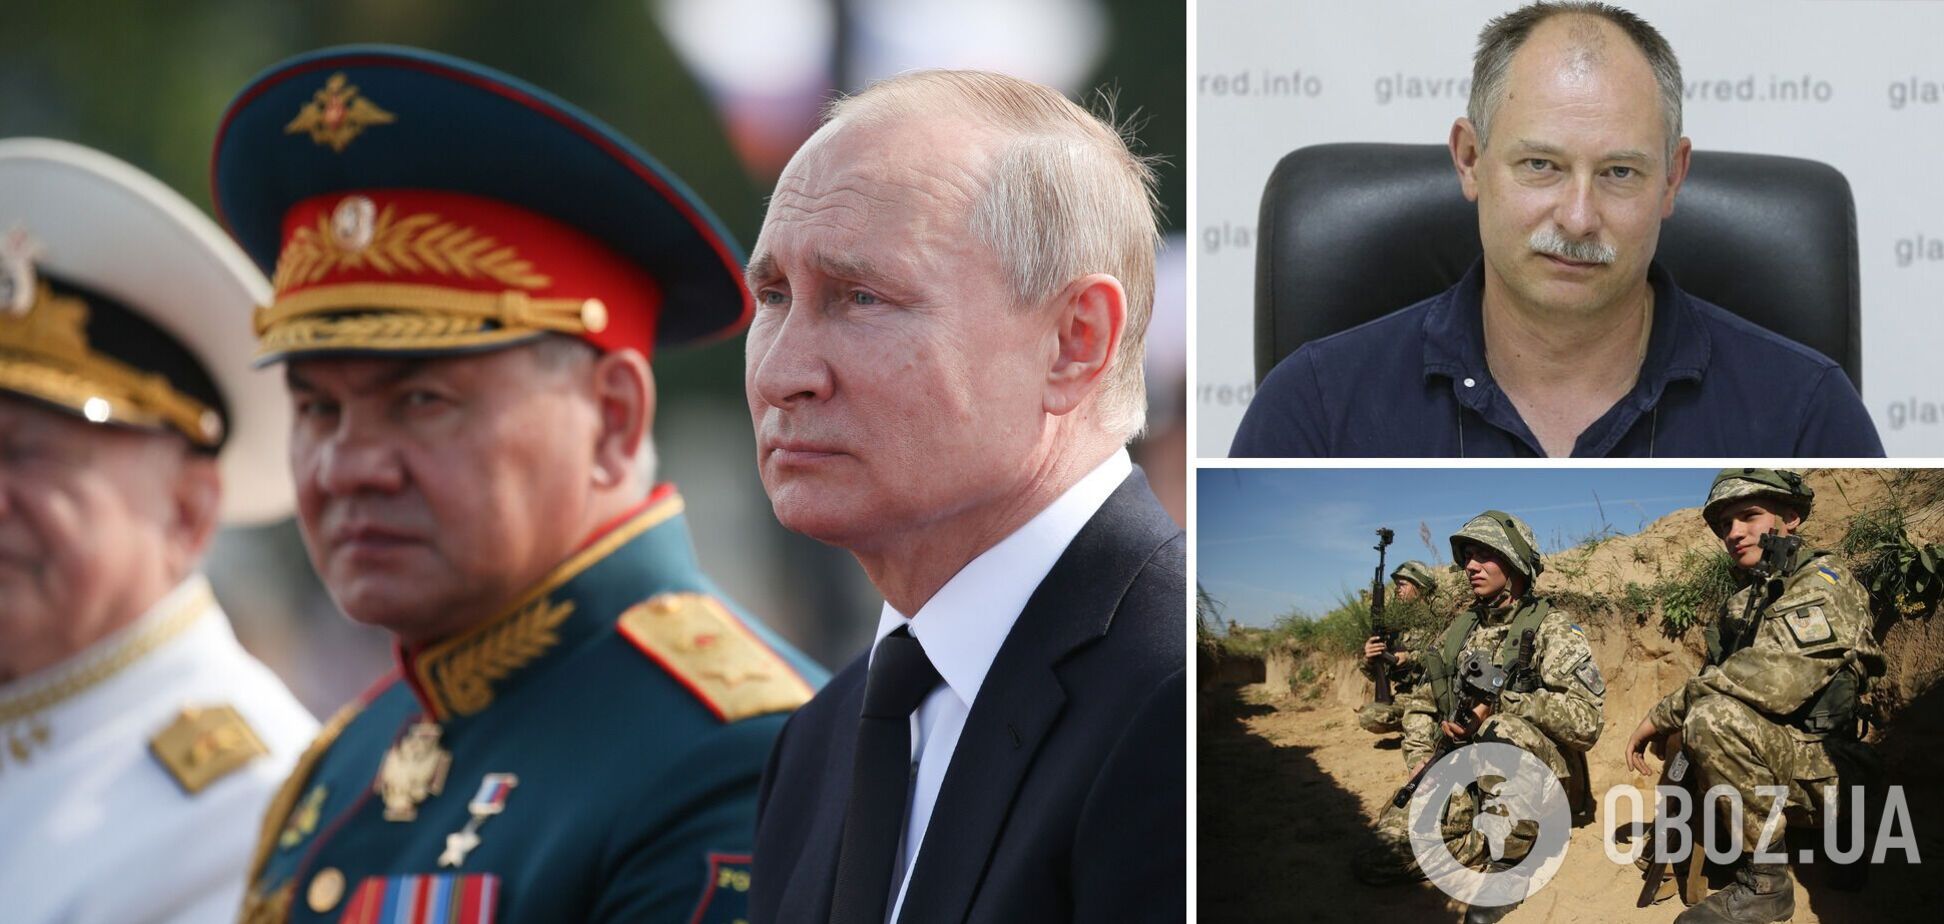 Жданов: Путин загнан в угол, каждый новый шаг ведет к проигрышу Кремля. Интервью